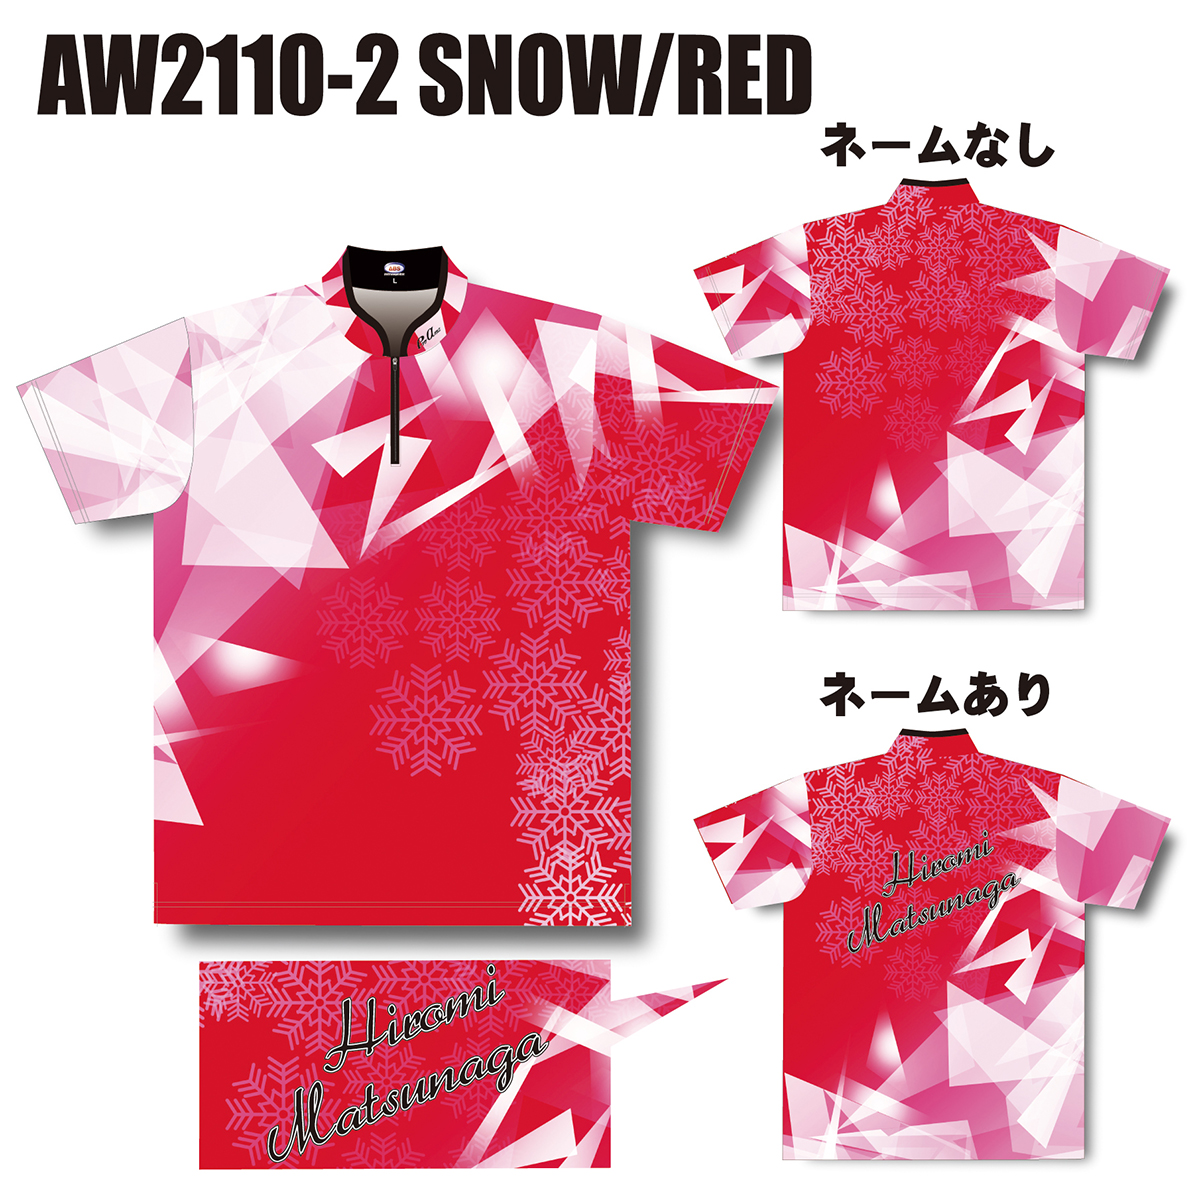 2021ウインターモデル(AW2110-2 SNOW/RED)